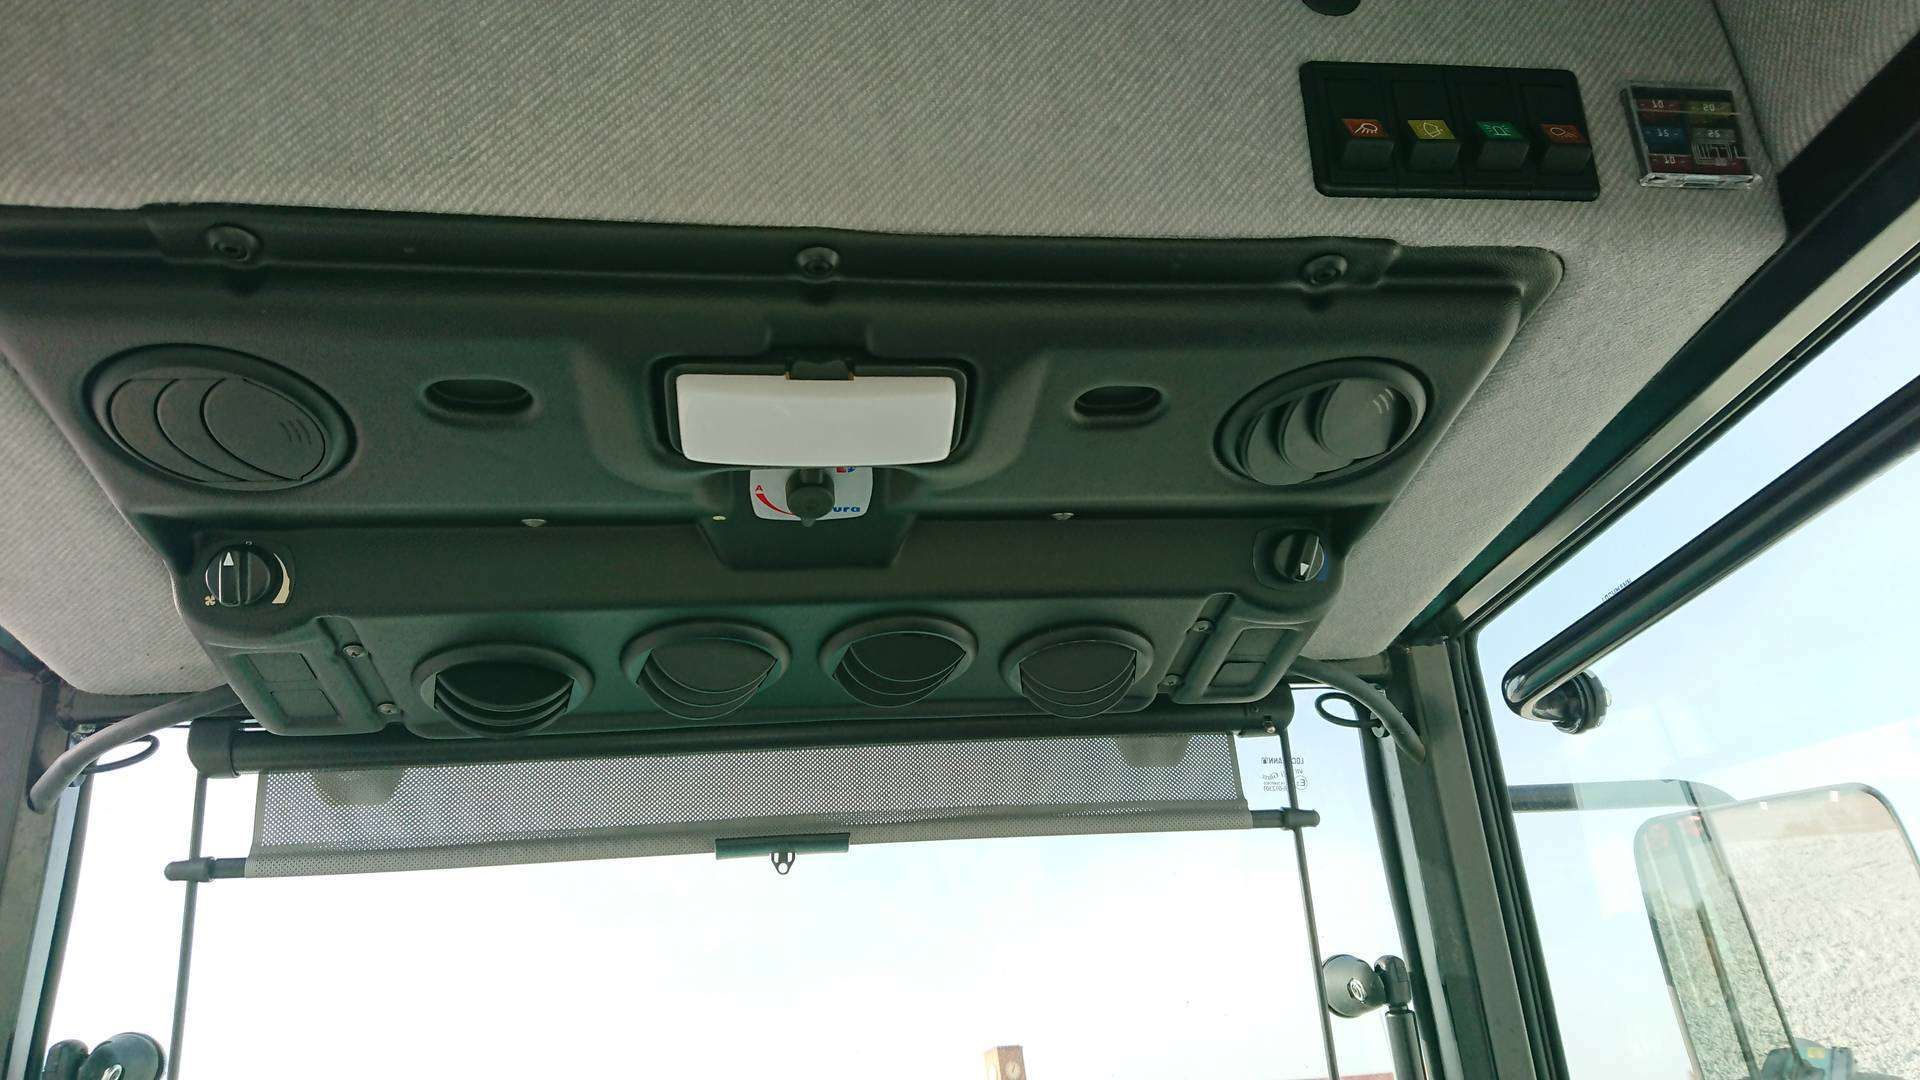 Dach kabiny z przełącznikami i panelem klimatyzacji Arbos 4090Q